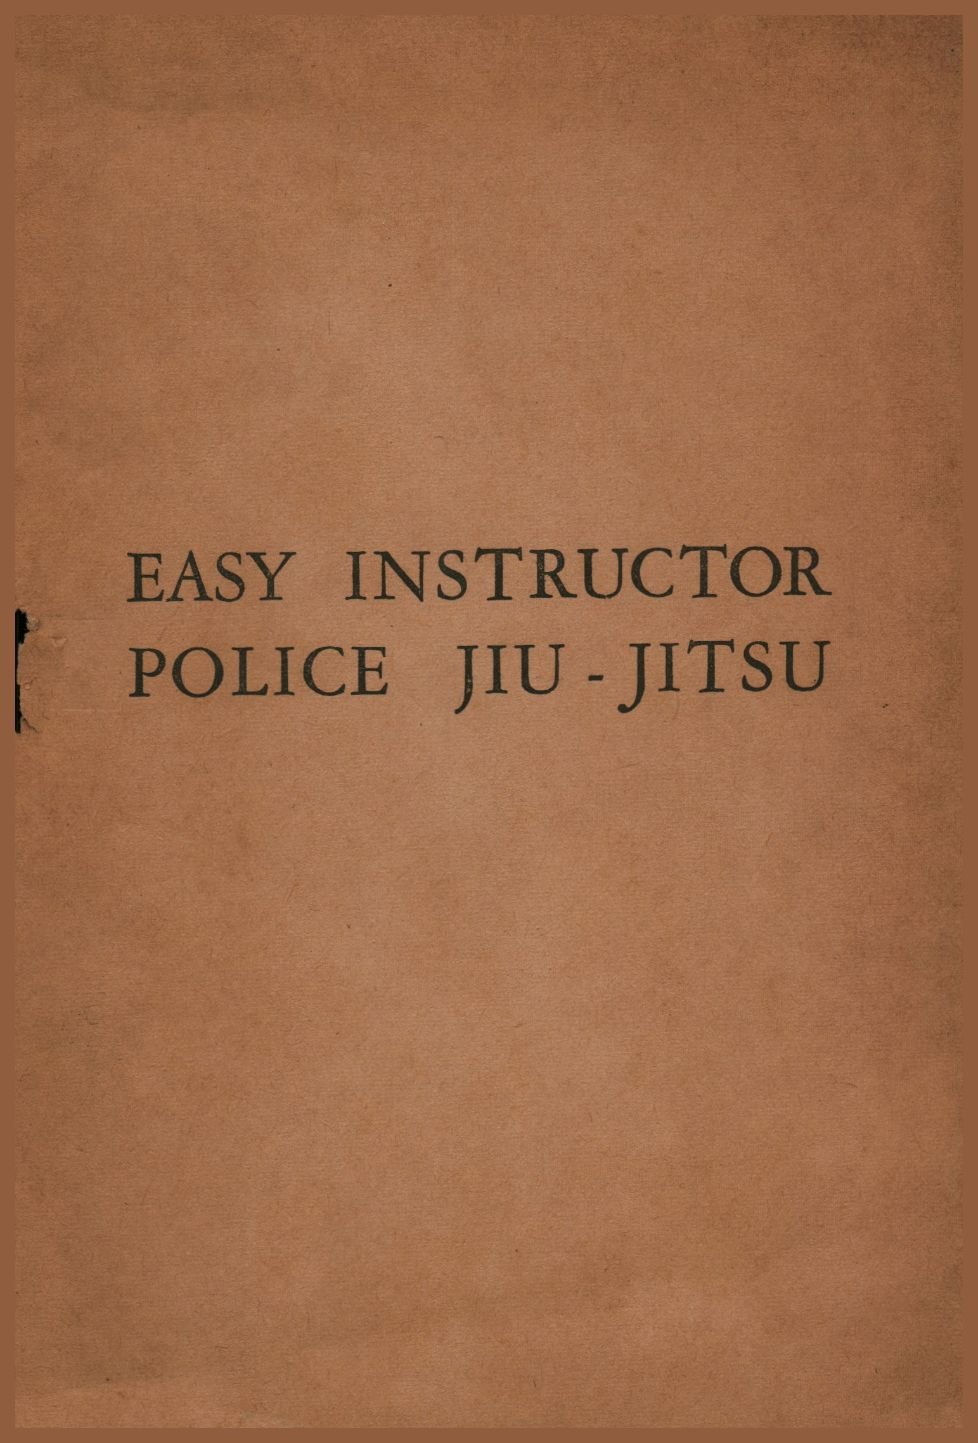 Police Jiu-Jitsu by Kato Futsiaka page 02.jpg